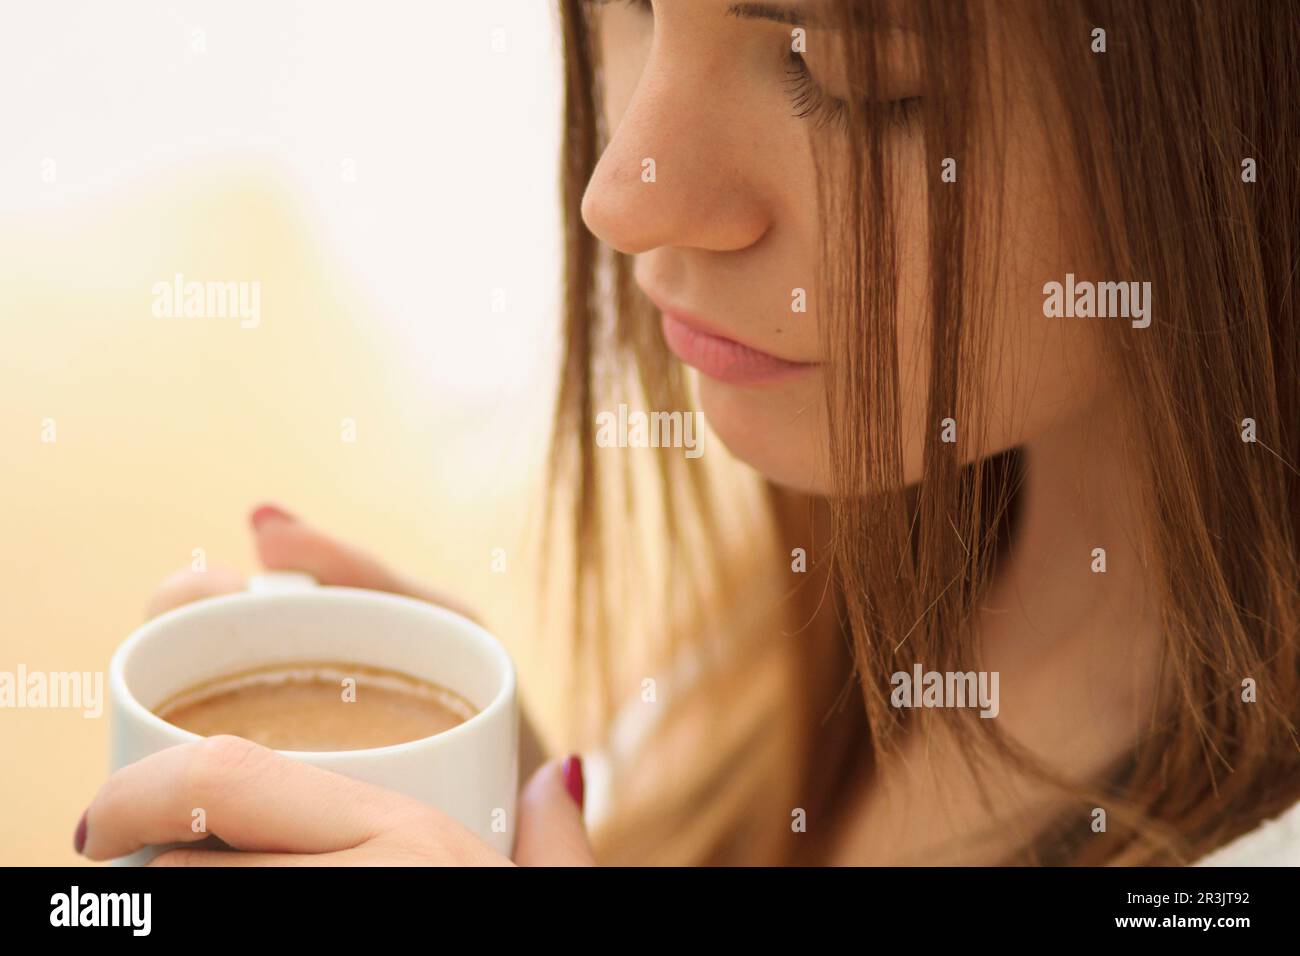 mujer joven bebiendo de una taza,islas baleares, Spain. Stock Photo